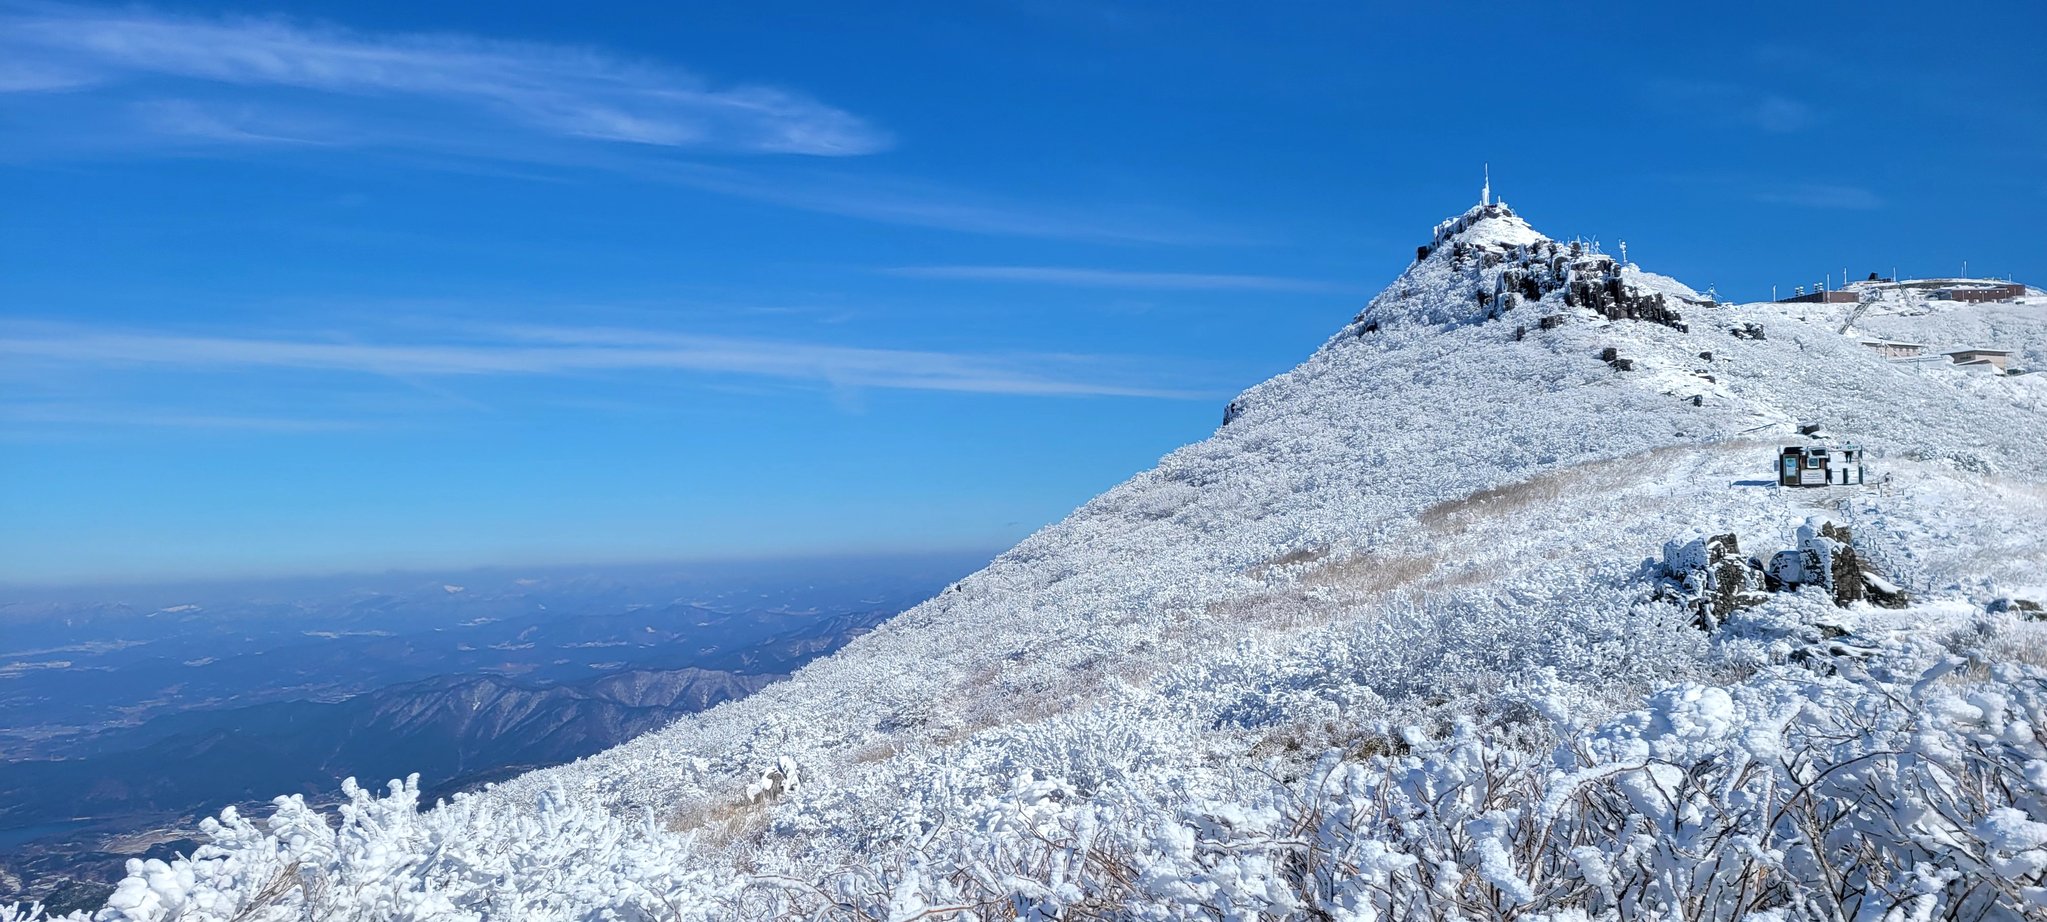 25일 광주 무등산국립공원 정상부(입석대)에 지난 사흘간 내린 눈이 쌓여 아름다운 설경을 연출하고 있다. 사진 무등산국립공원관리사무소